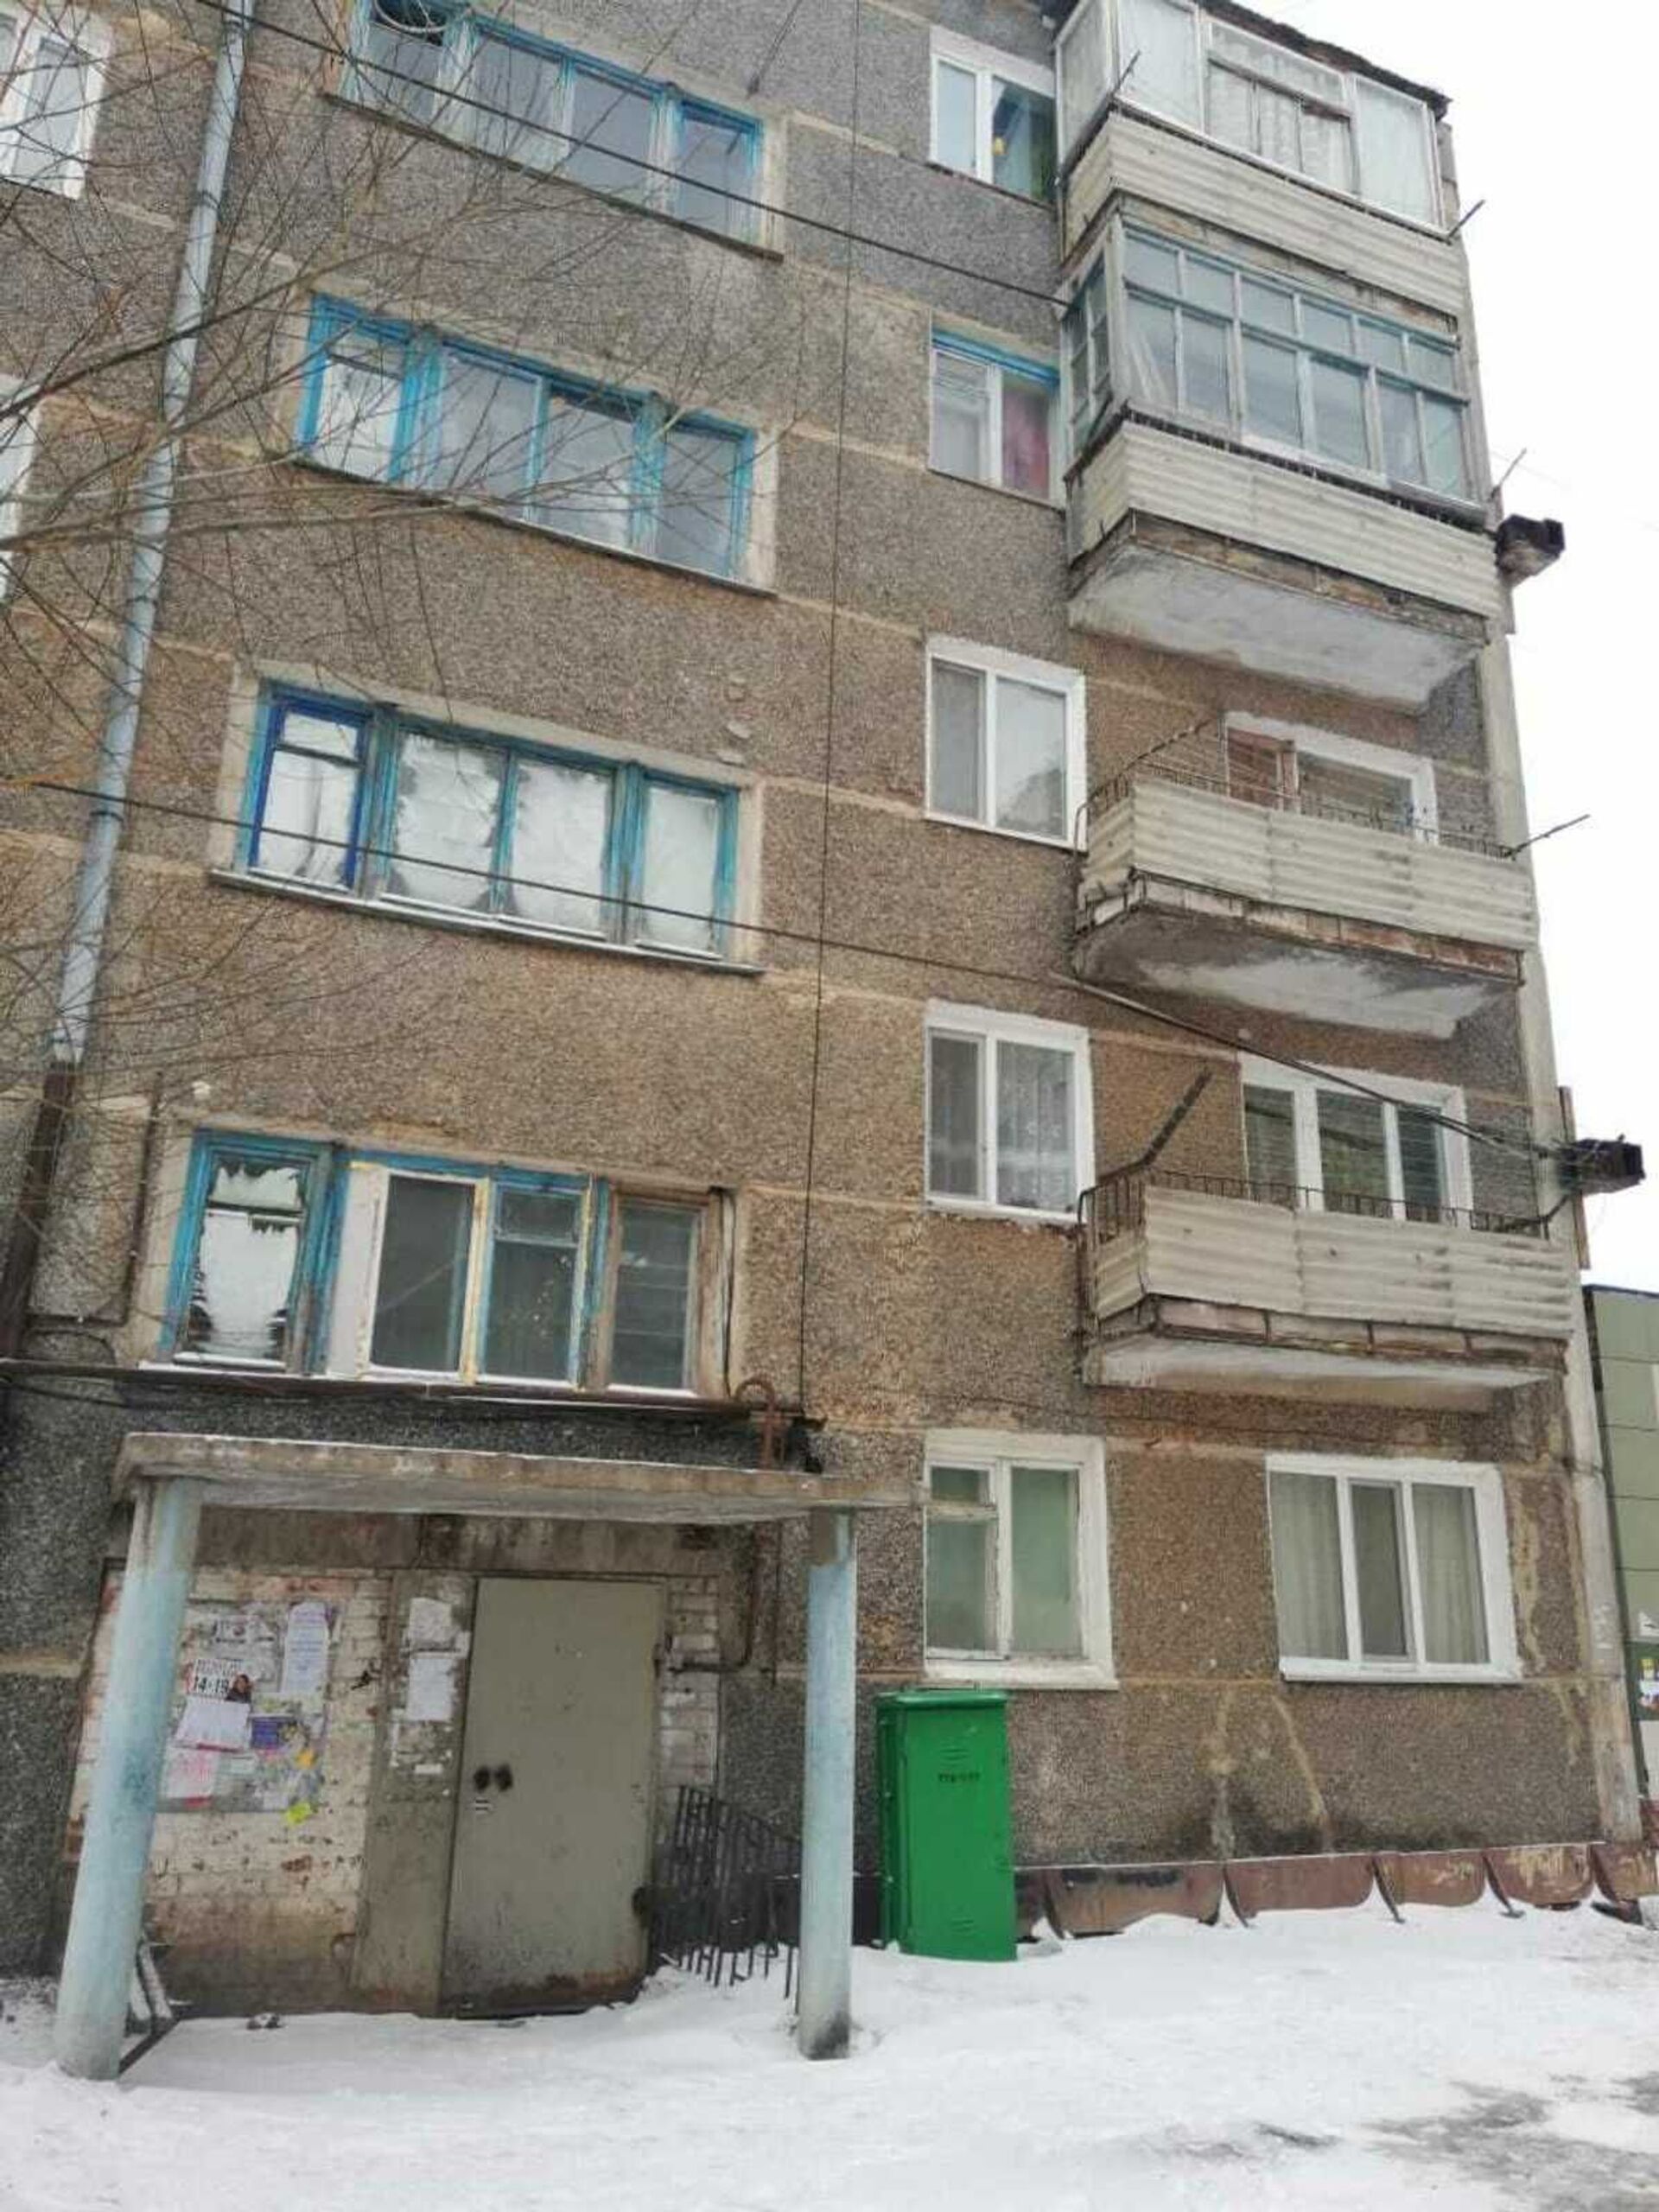 Дом-парадокс, обтянутый тросами: для жильцов пятиэтажки в Кокшетау строят новое жилье - Sputnik Казахстан, 1920, 31.03.2021